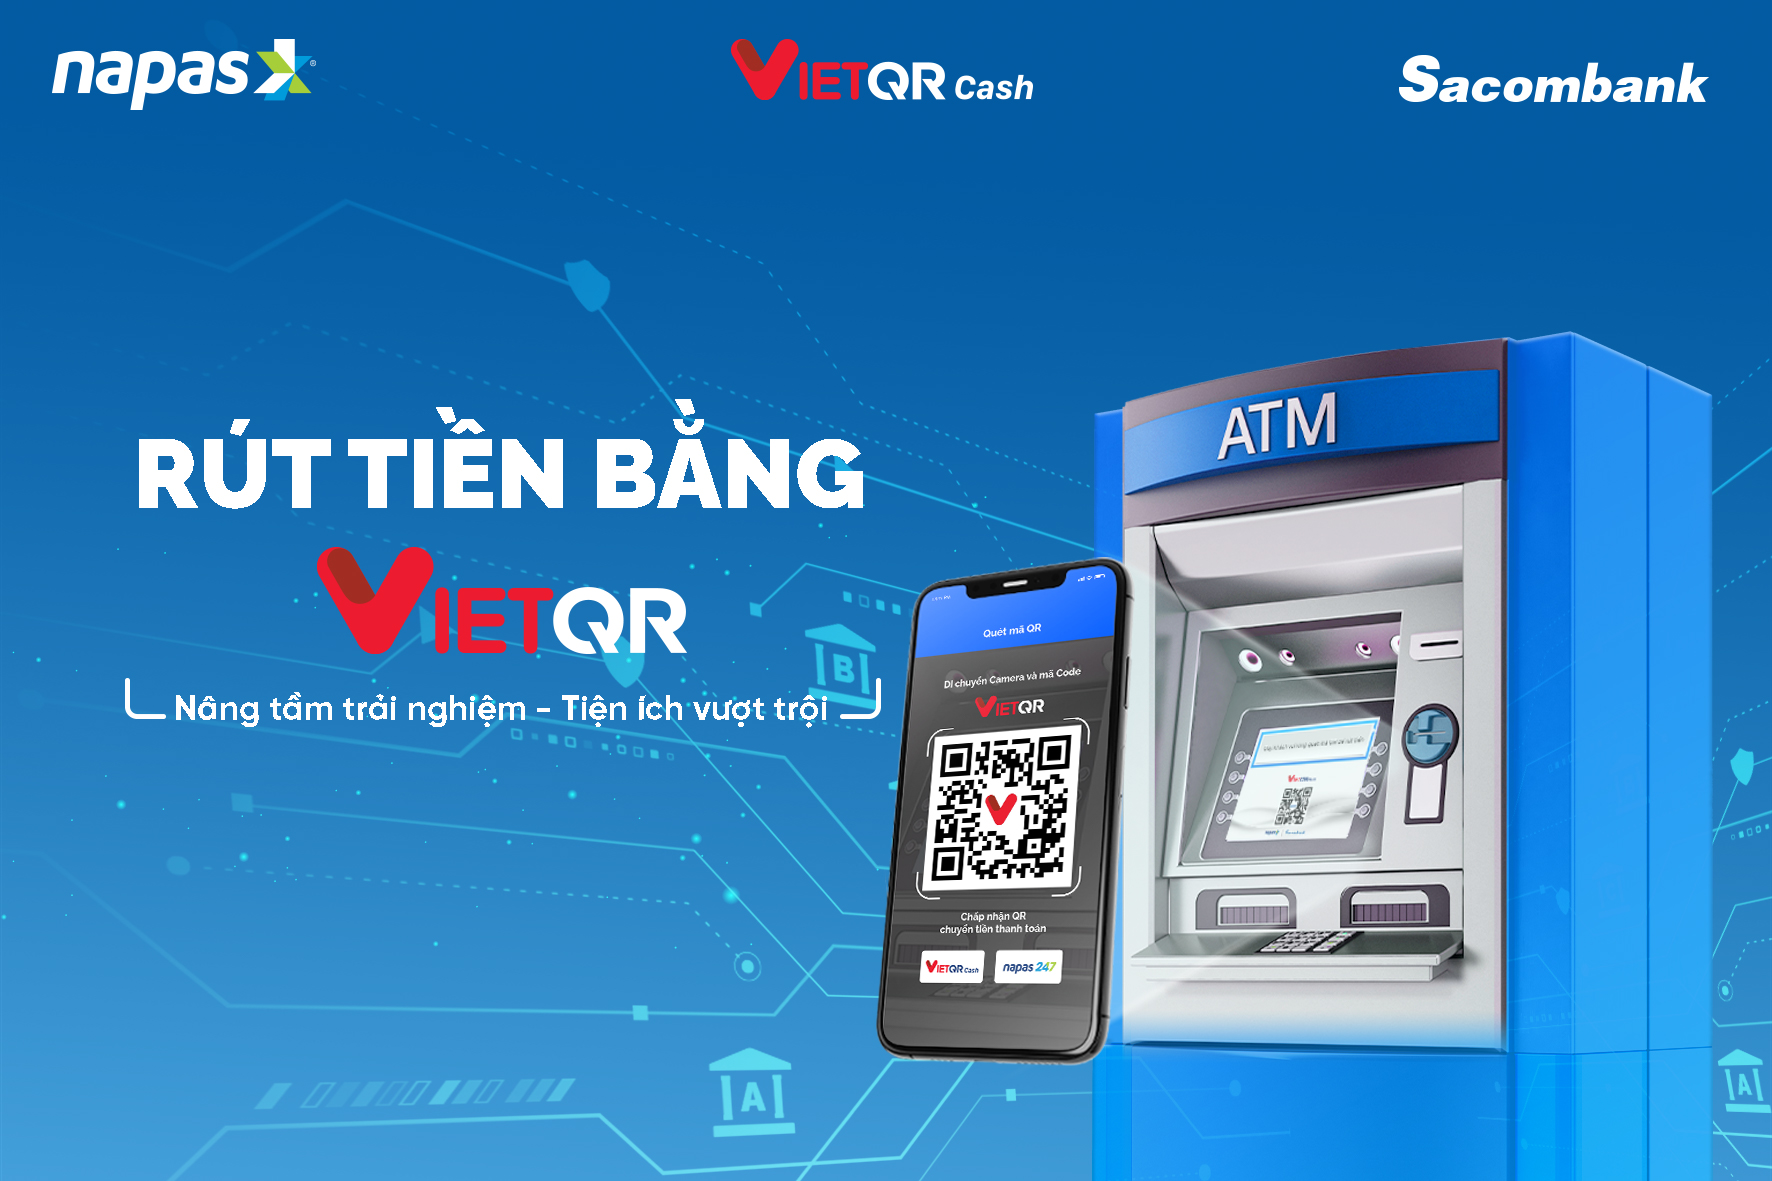 Quét VietQR rút tiền tại ATM các ngân hàng dễ dàng với Sacombank - Ảnh 1.